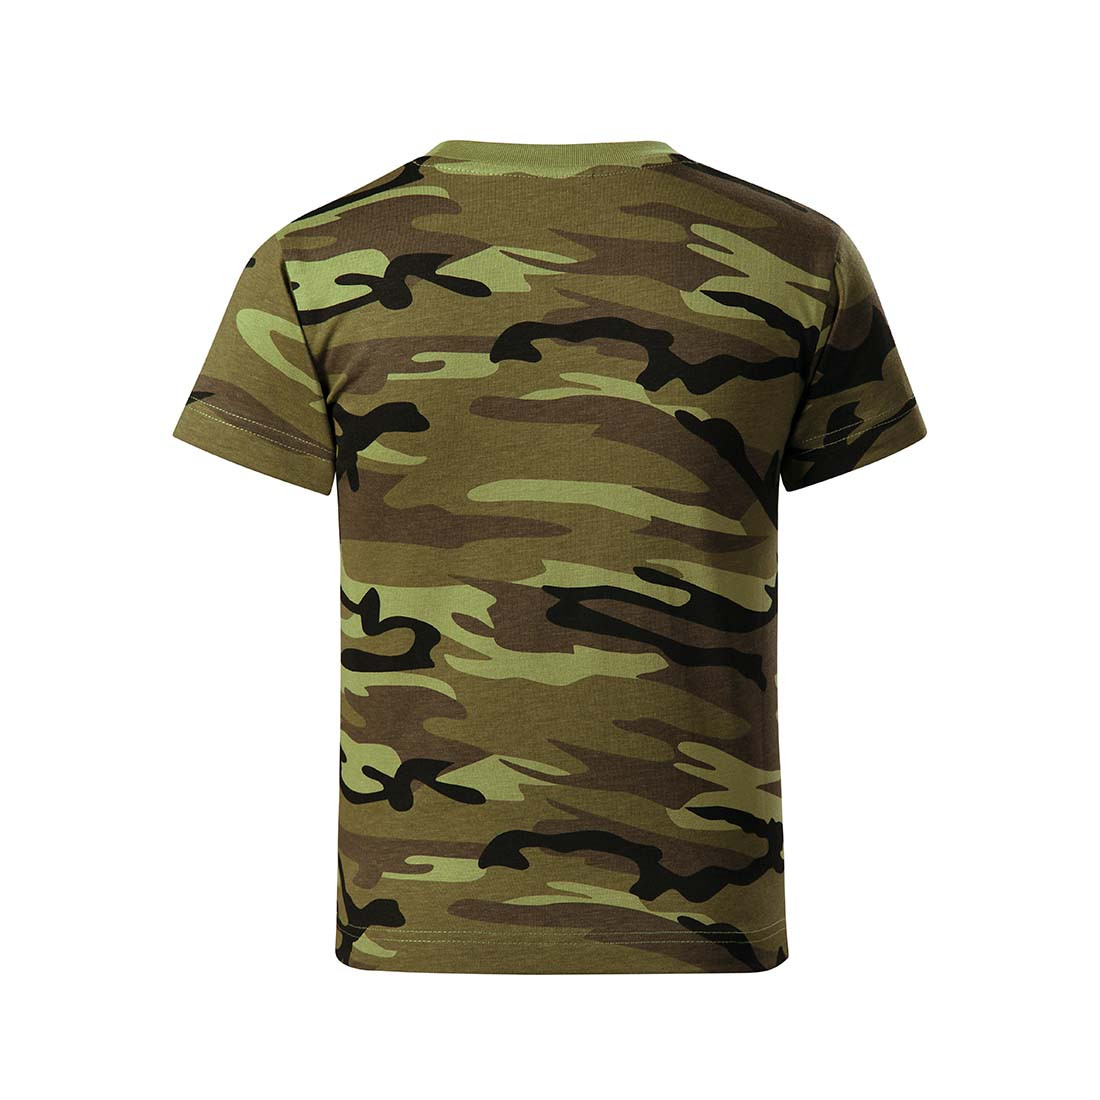 Kids Camouflage T-shirt - Safetywear